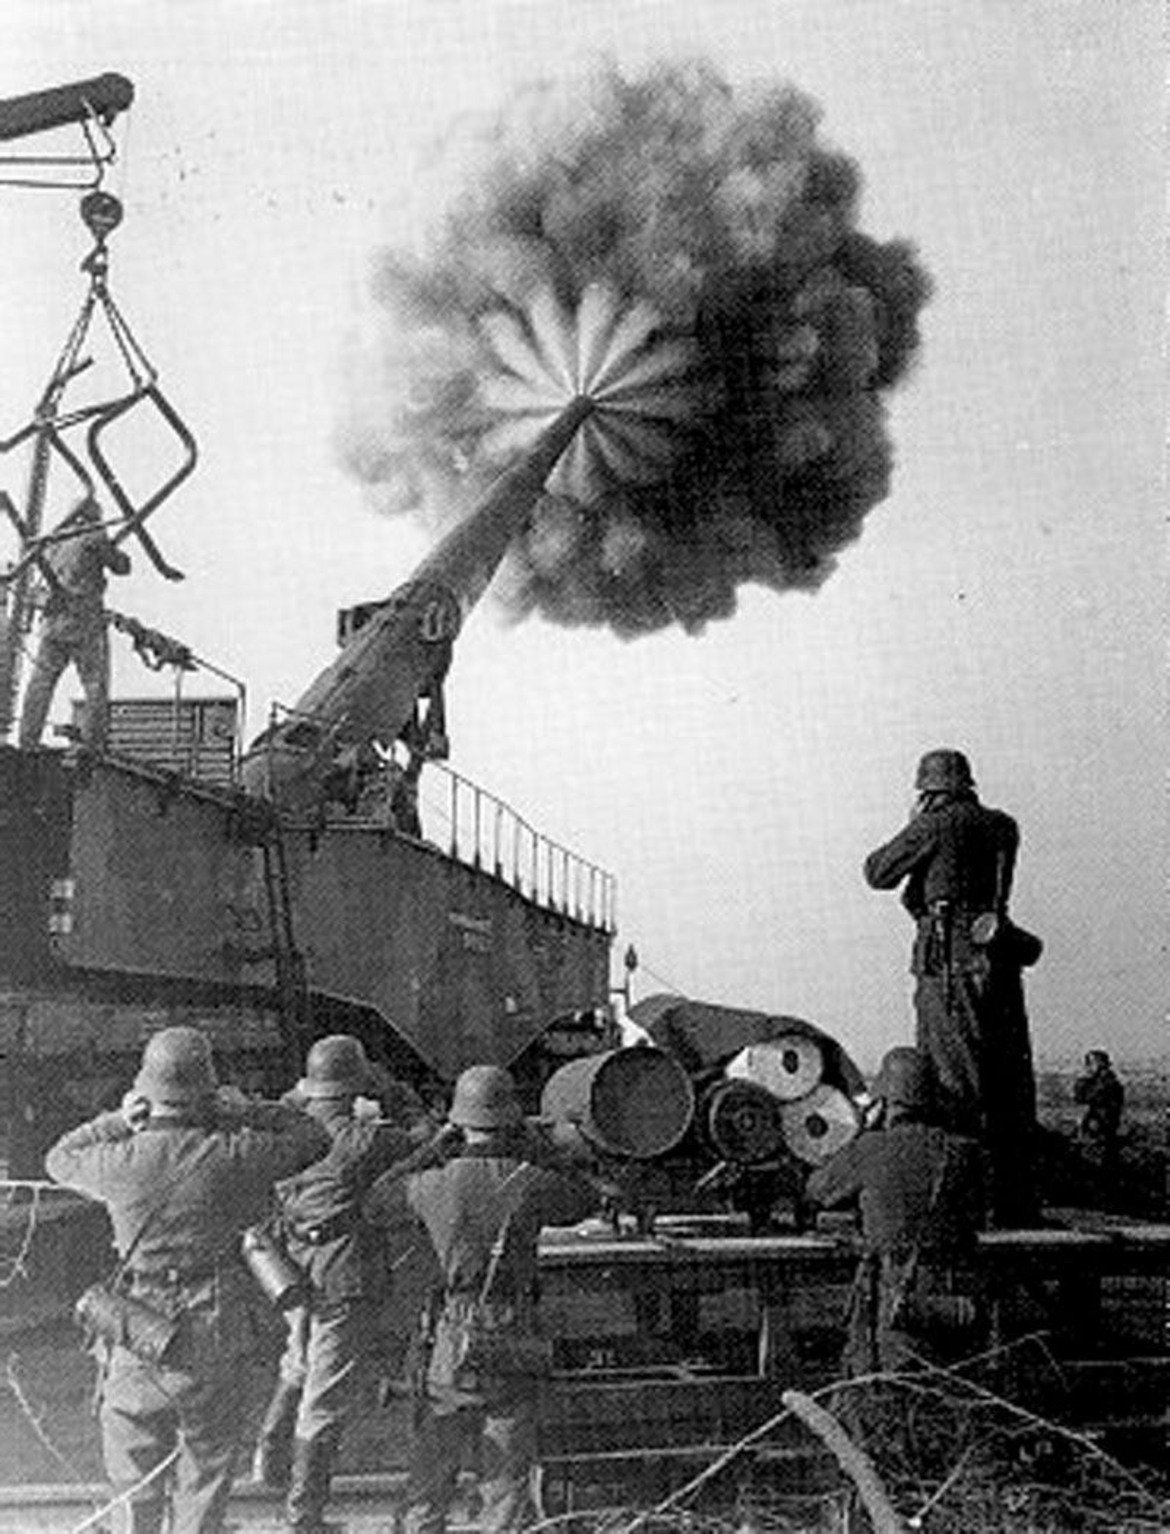 Тежкият Густав и Дора
"Густав", отново дело на "Круп", е бил най-едрокалибреното нарезно оръжие използвано някога, най-тежката артилерийска установка създавана някога и е стрелял най-тежките снаряди, използвани някога. Оръдията са проектирани към края на 30-те години като обсадна артилерия, способна да разруши френските укрепления на Линията Мажино, най-здравите укрепления по това време. "Тежкият Густав" е тежал 1350 тона и е имал обсег от 48 км. Самите снаряди са с тежест около 700 кг и се изстрелват със скорост 820 м/с. Дора е второто произведено оръдие по същия модел. Използвано е в Битката при Сталинград. Пристига на 15 km западно от града през август 1942 г, а през септември е приготвено за стрелба. Оттеглено е, когато съветските войски наближават и заплашват да го обкръжат. При изтеглянето на Вермахта от СССР, немците вземат Дора със себе си. Тежкият Густав е унищожен на 14 април 1945 г. от немците, 1 ден преди пристигането на американските войски, а Дора е преместена в Графенвер през март 1945 г, където и бива взривена месец по-късно.